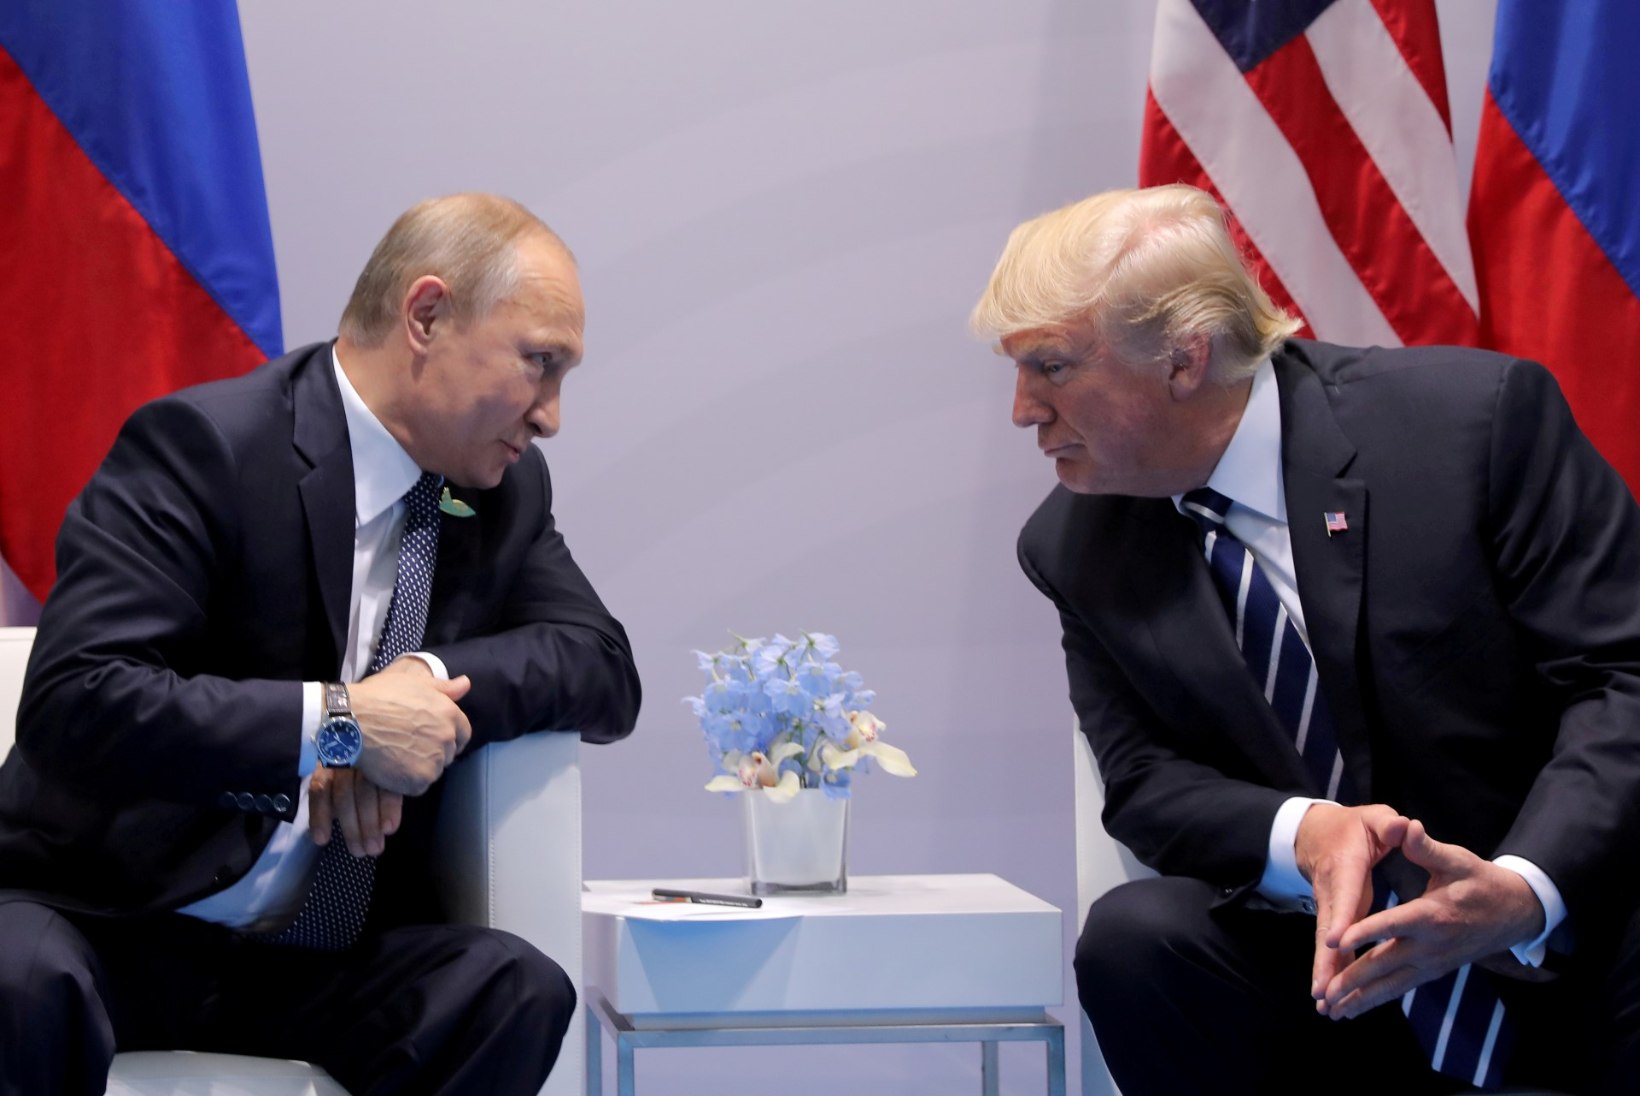 Trumpi ja Putini kohtumine võib tuua kaasa rangema piirikontrolli Eesti-Soome piiril